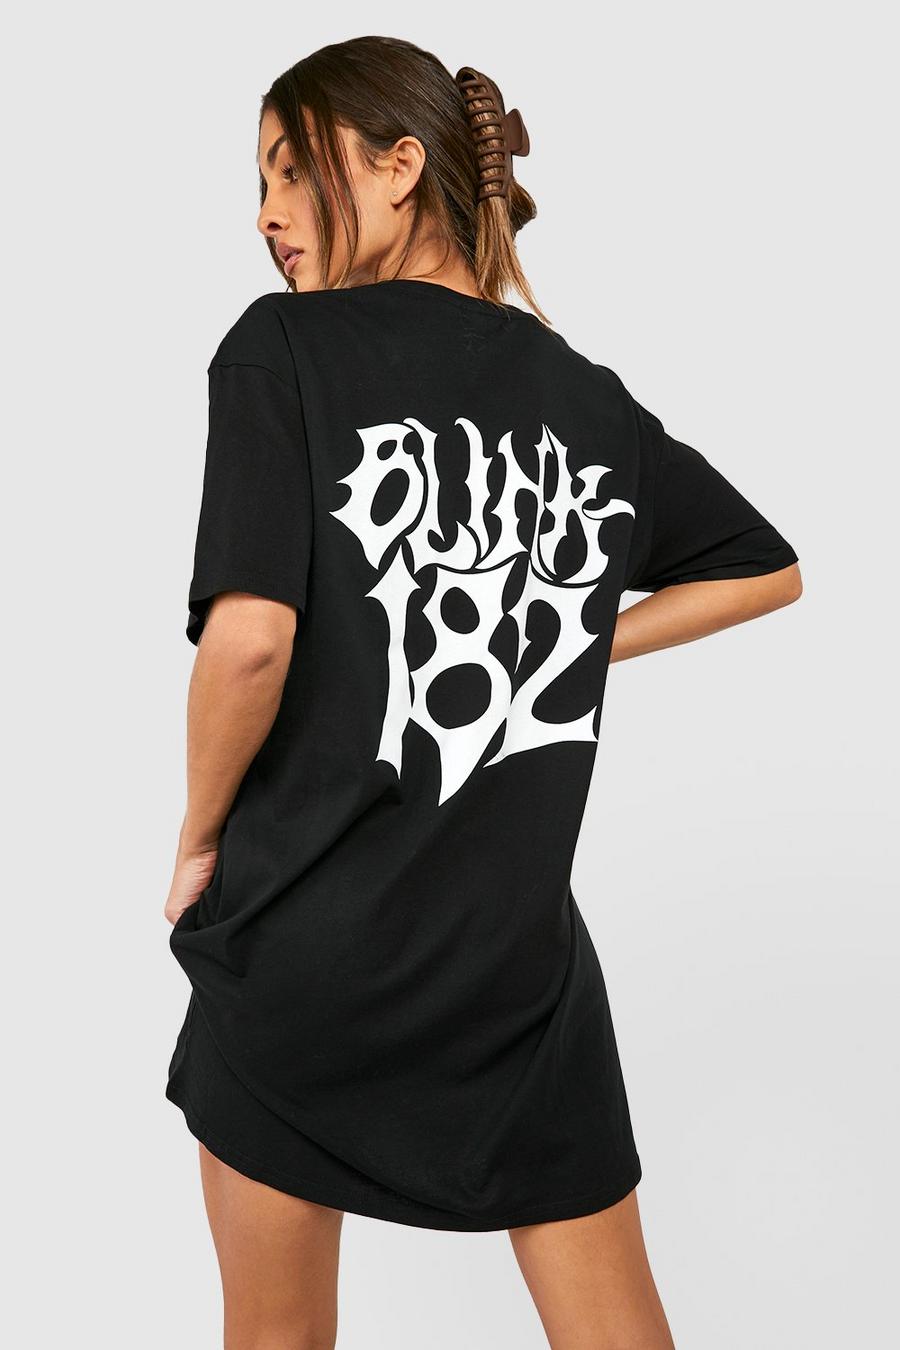 Black Blink 182 License Back Print T-shirt Dress image number 1